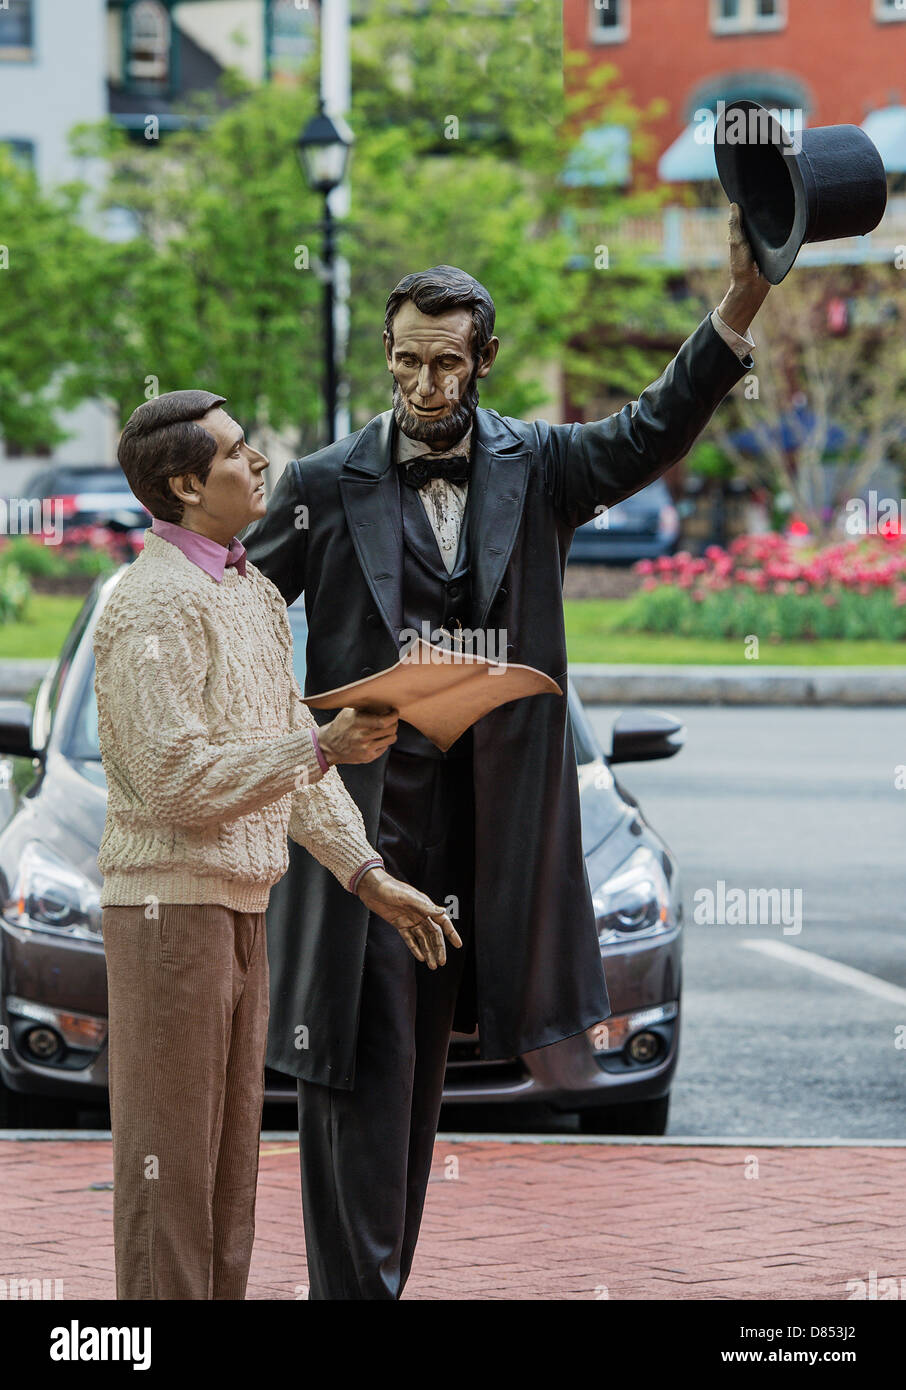 Retour 'visite' statue de Lincoln de Lincoln Square, Gettysburg, Pennsylvanie, USA Banque D'Images